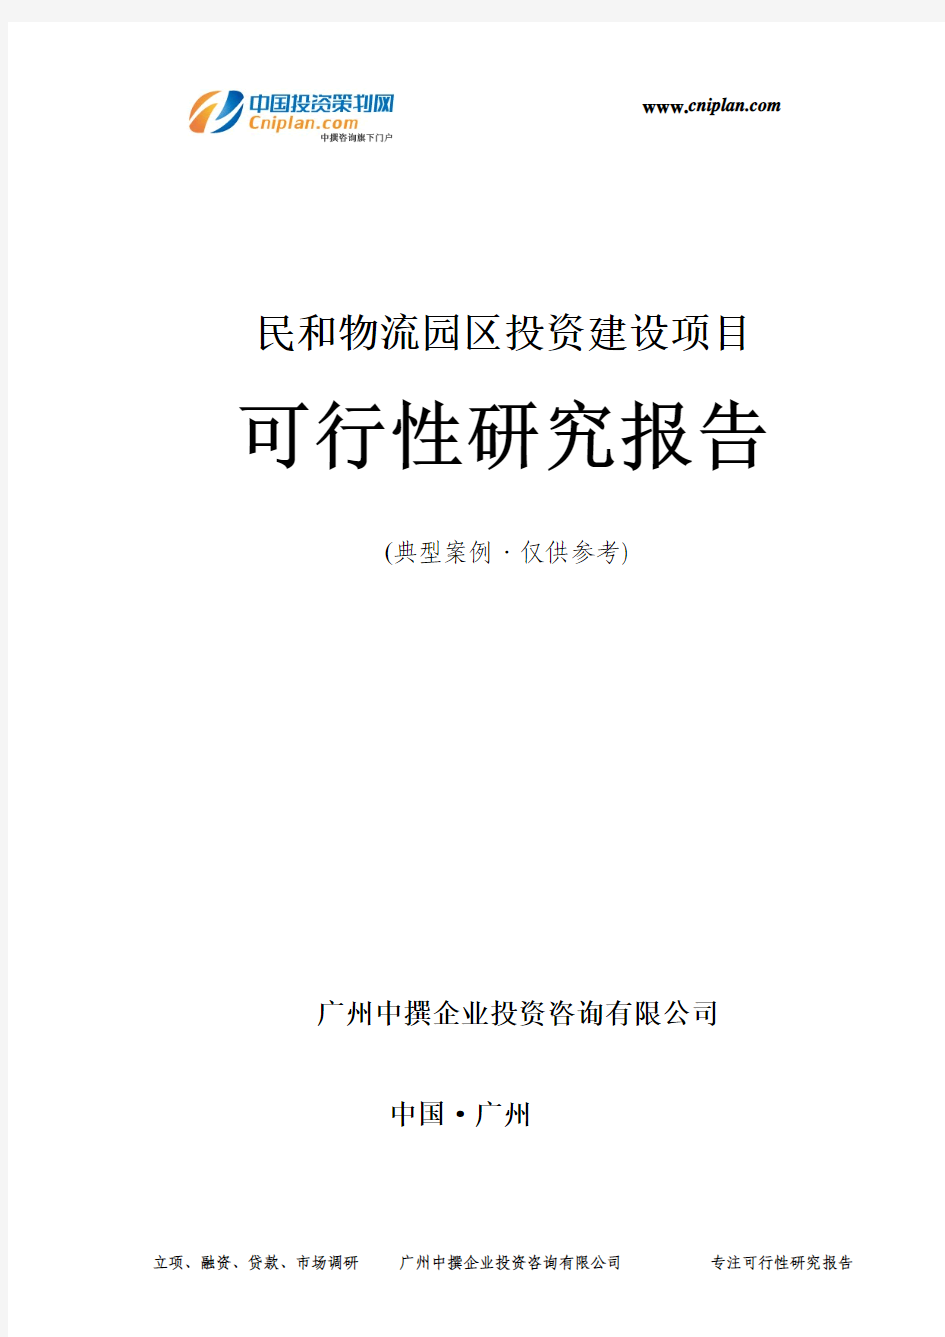 民和物流园区投资建设项目可行性研究报告-广州中撰咨询